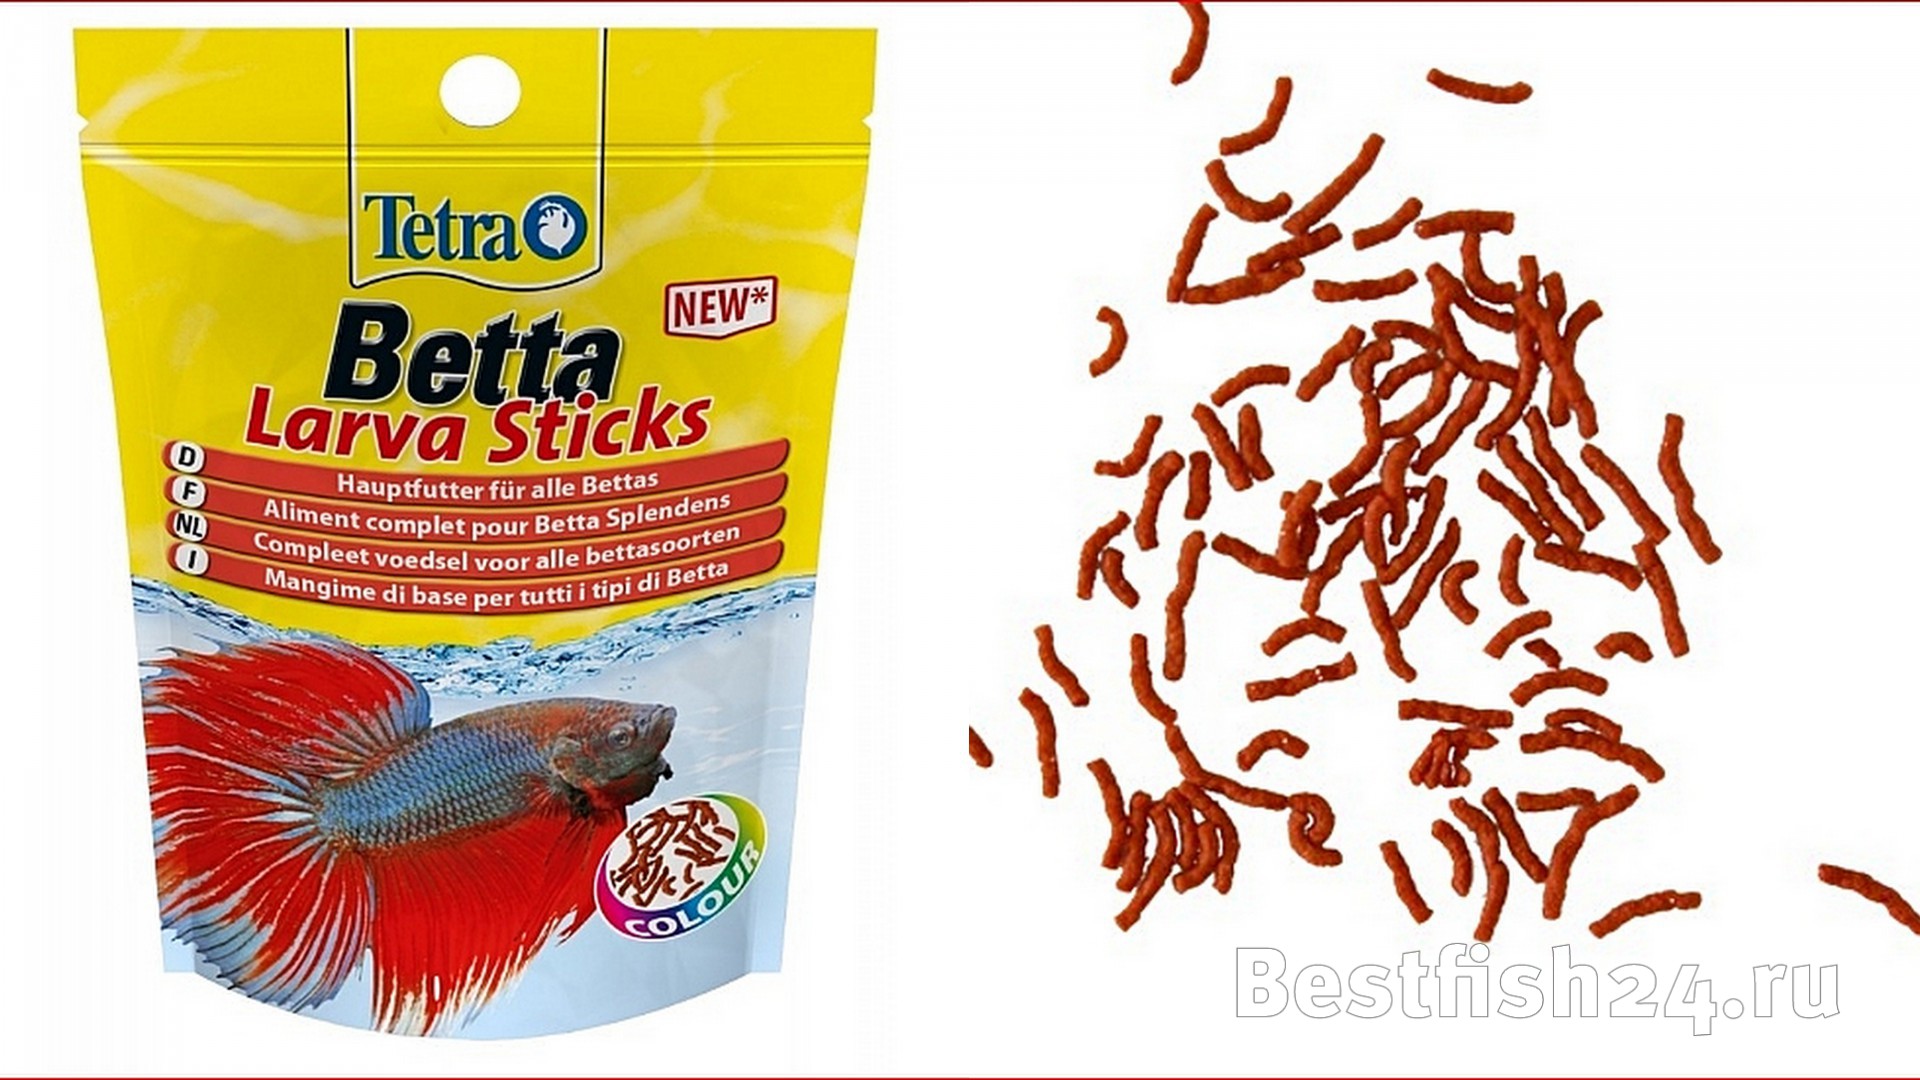 Низкая цена! Купить Tetra Betta Larva Sticks 5 г(пакетик)- корм в форме  палочек, похожих на мотыля, для петушков и других лабиринтовых рыб за 159  руб.! В наличии более 280 видов аквариумных рыбок